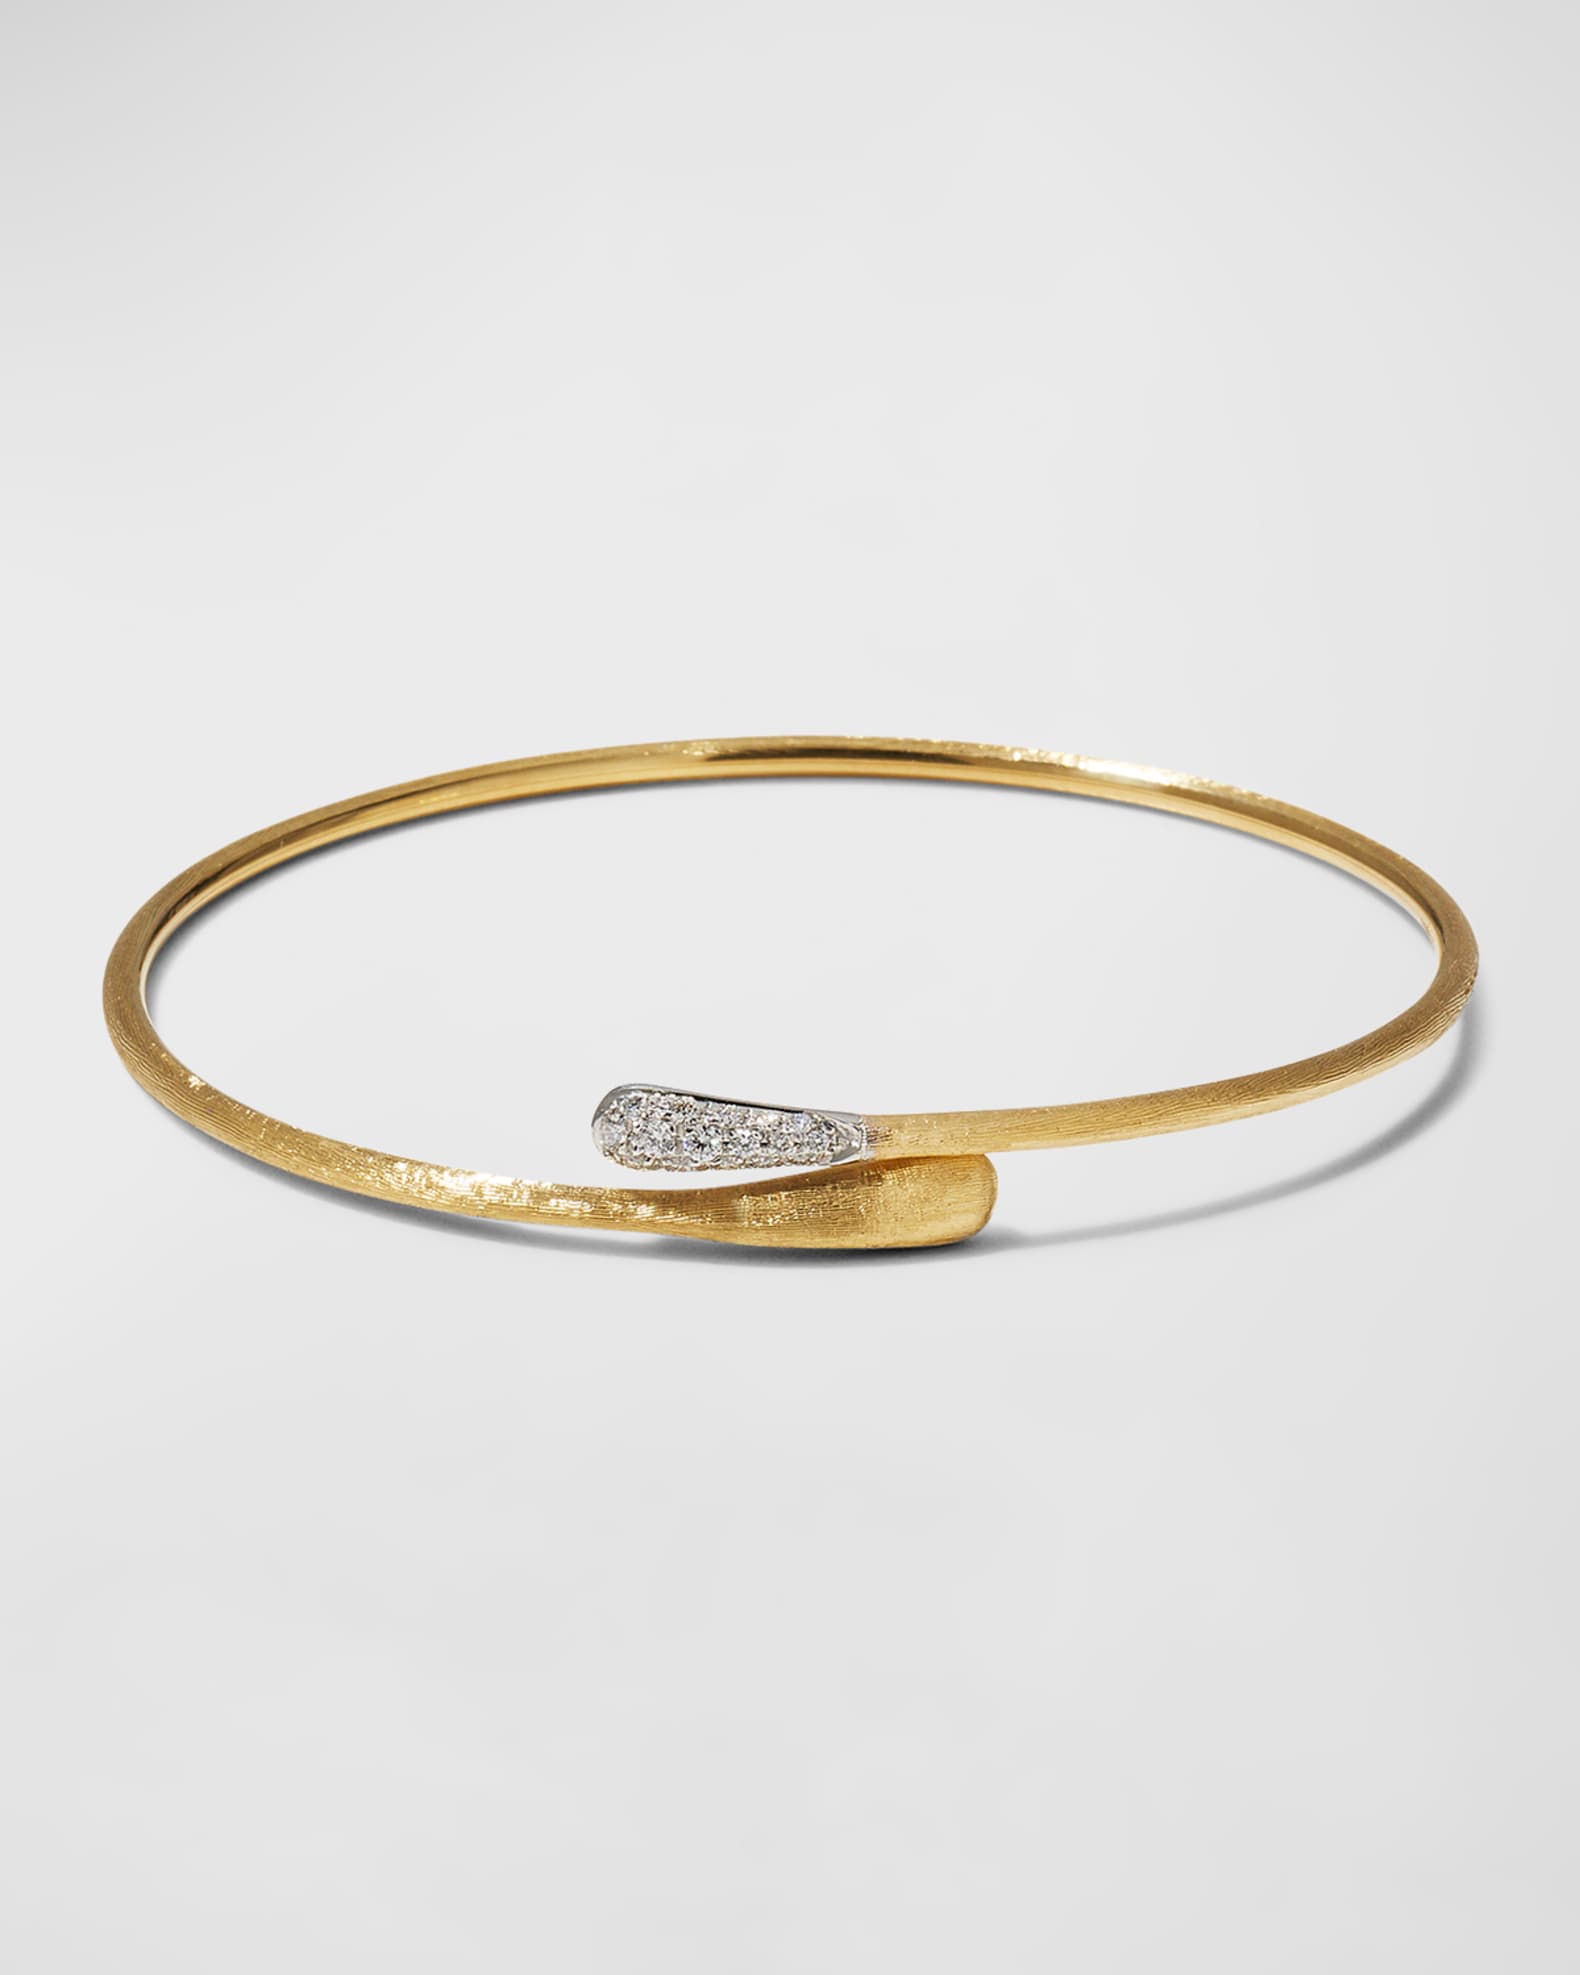 Louis Vuitton, Jewelry, Gorgeous Louis Vuitton Italian Luxury Wrap  Bracelet Pristine Condition